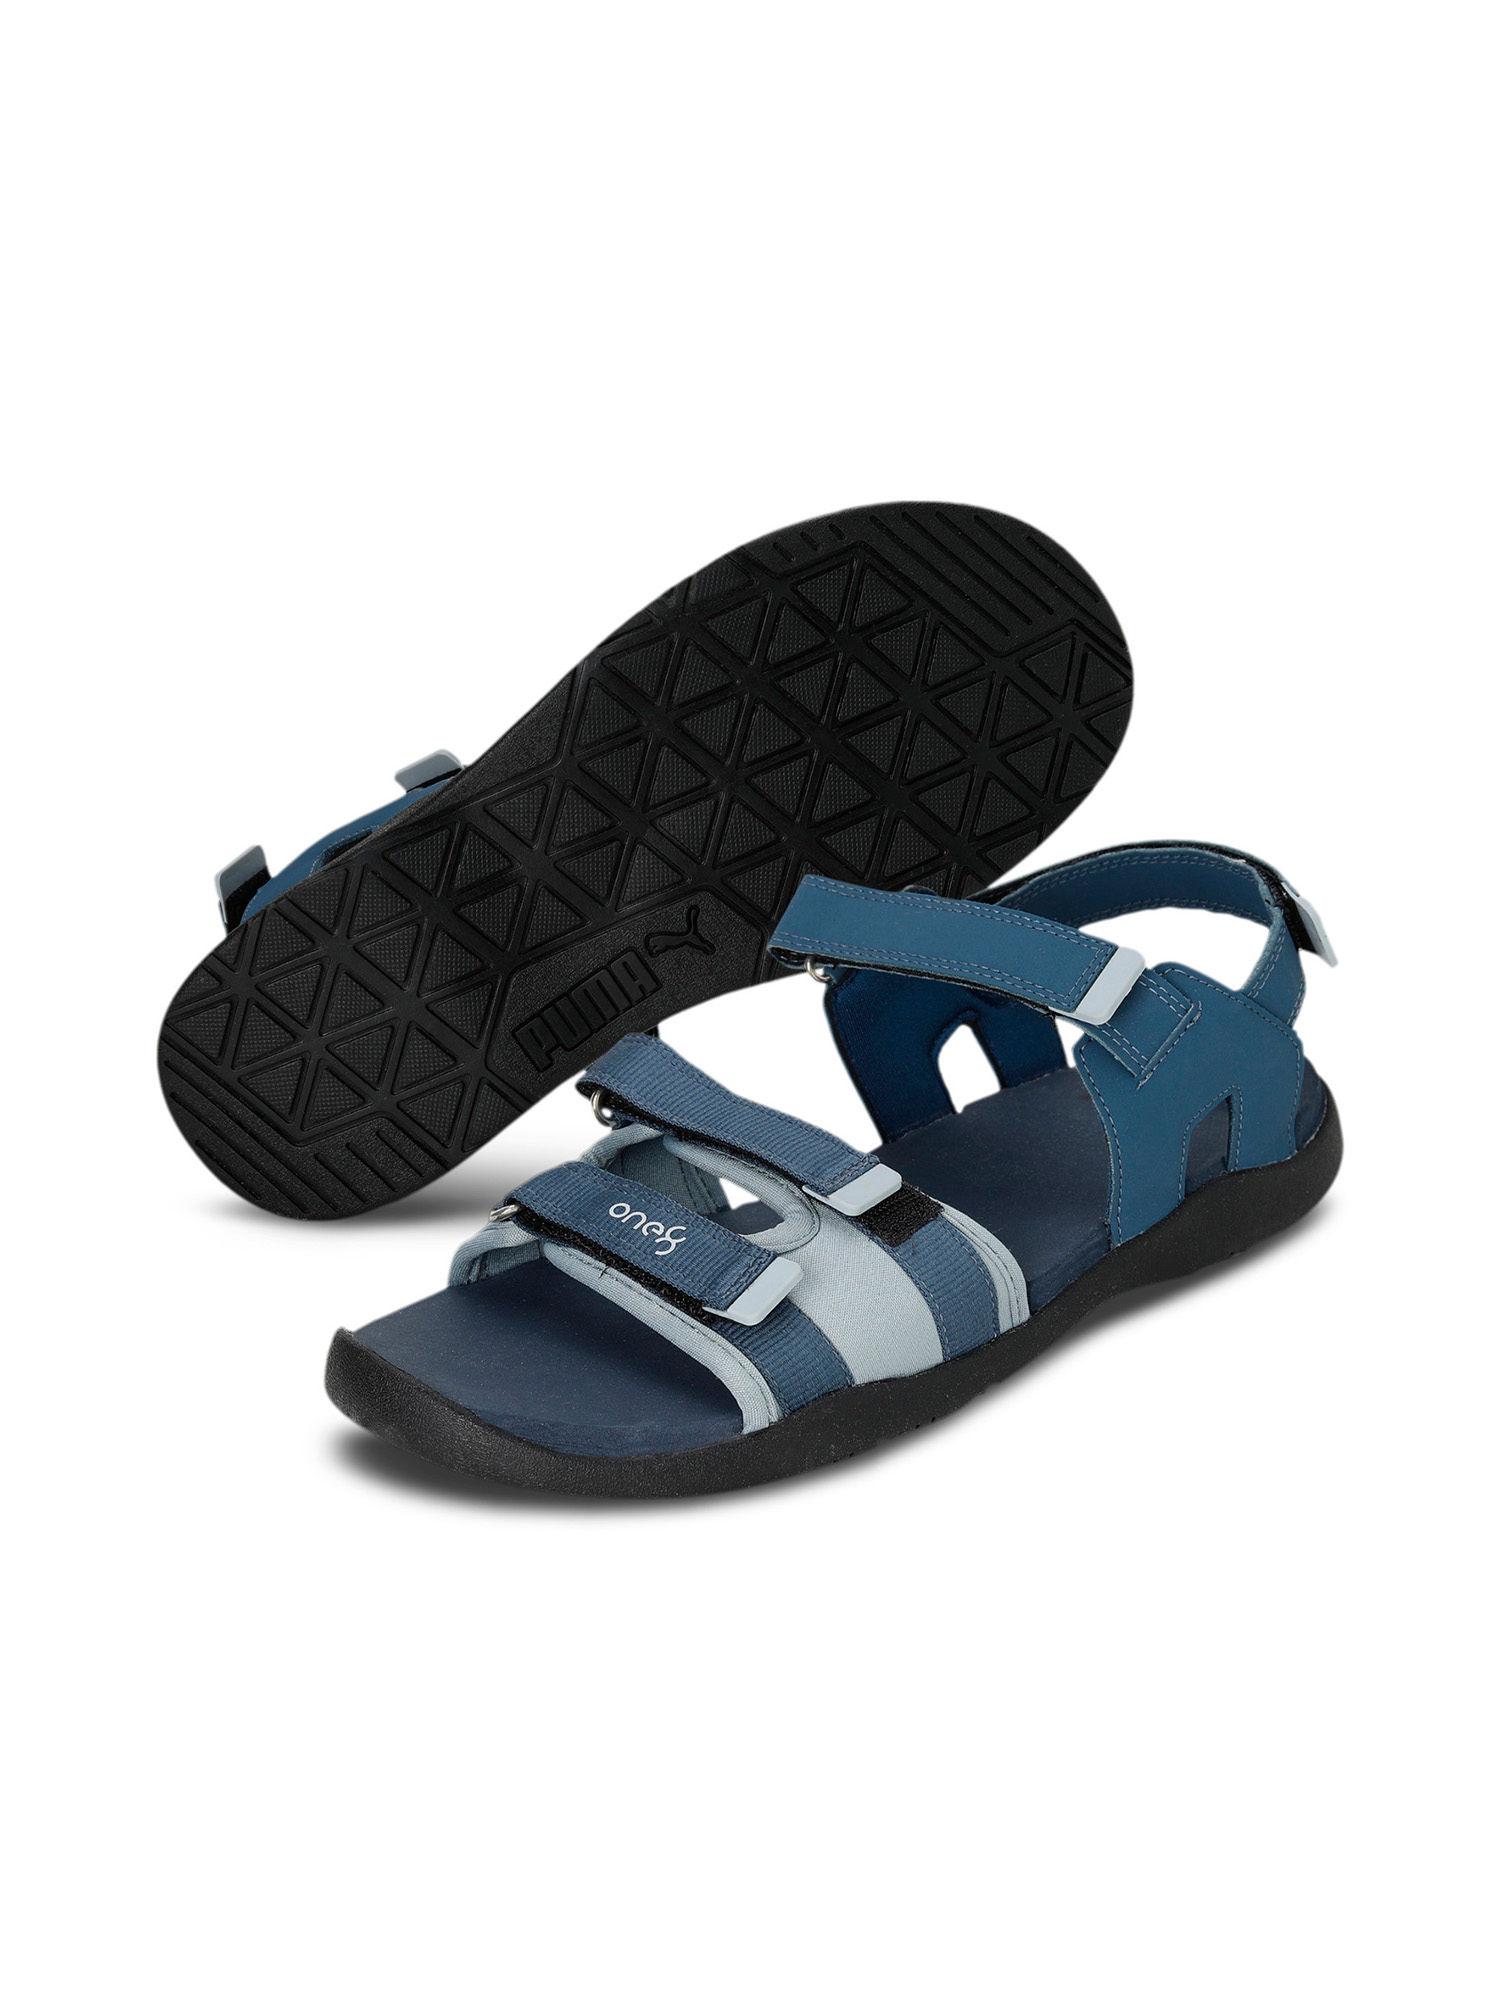 stride-v3-one8-mens-blue-sandals